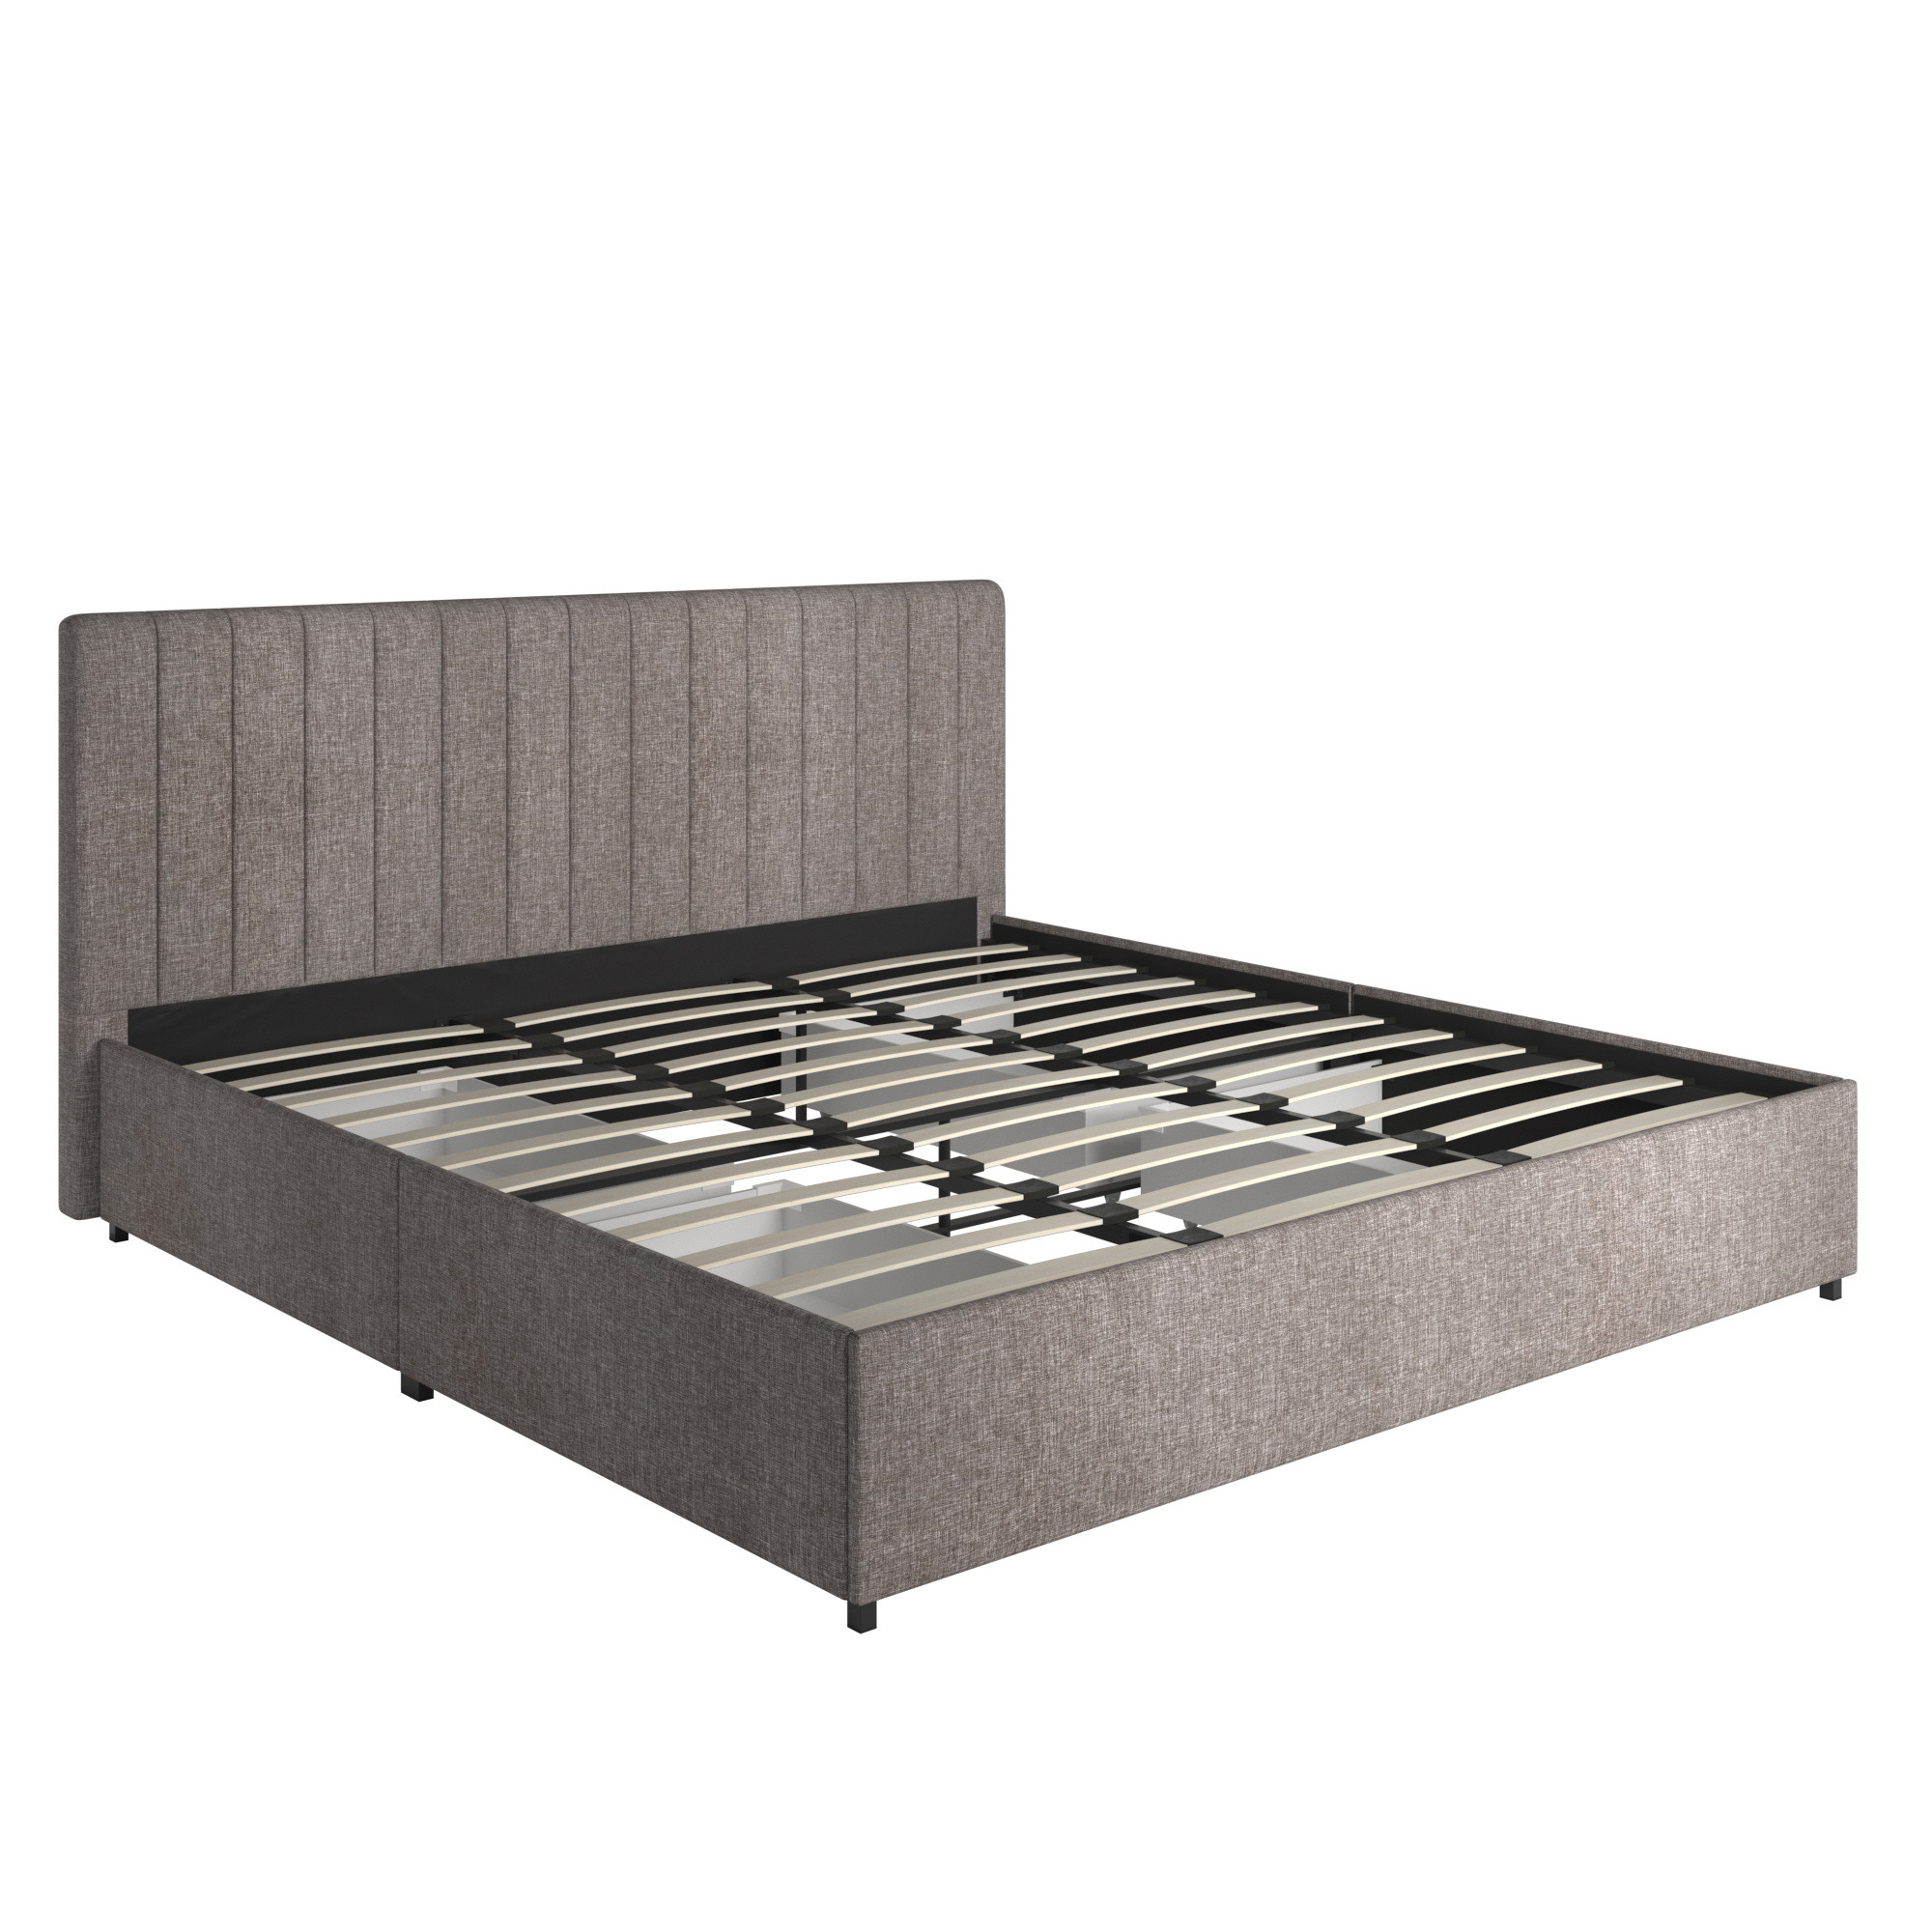 Weston Home Gaylen Grey Linen Upholstered Storage Platform King Bed ...